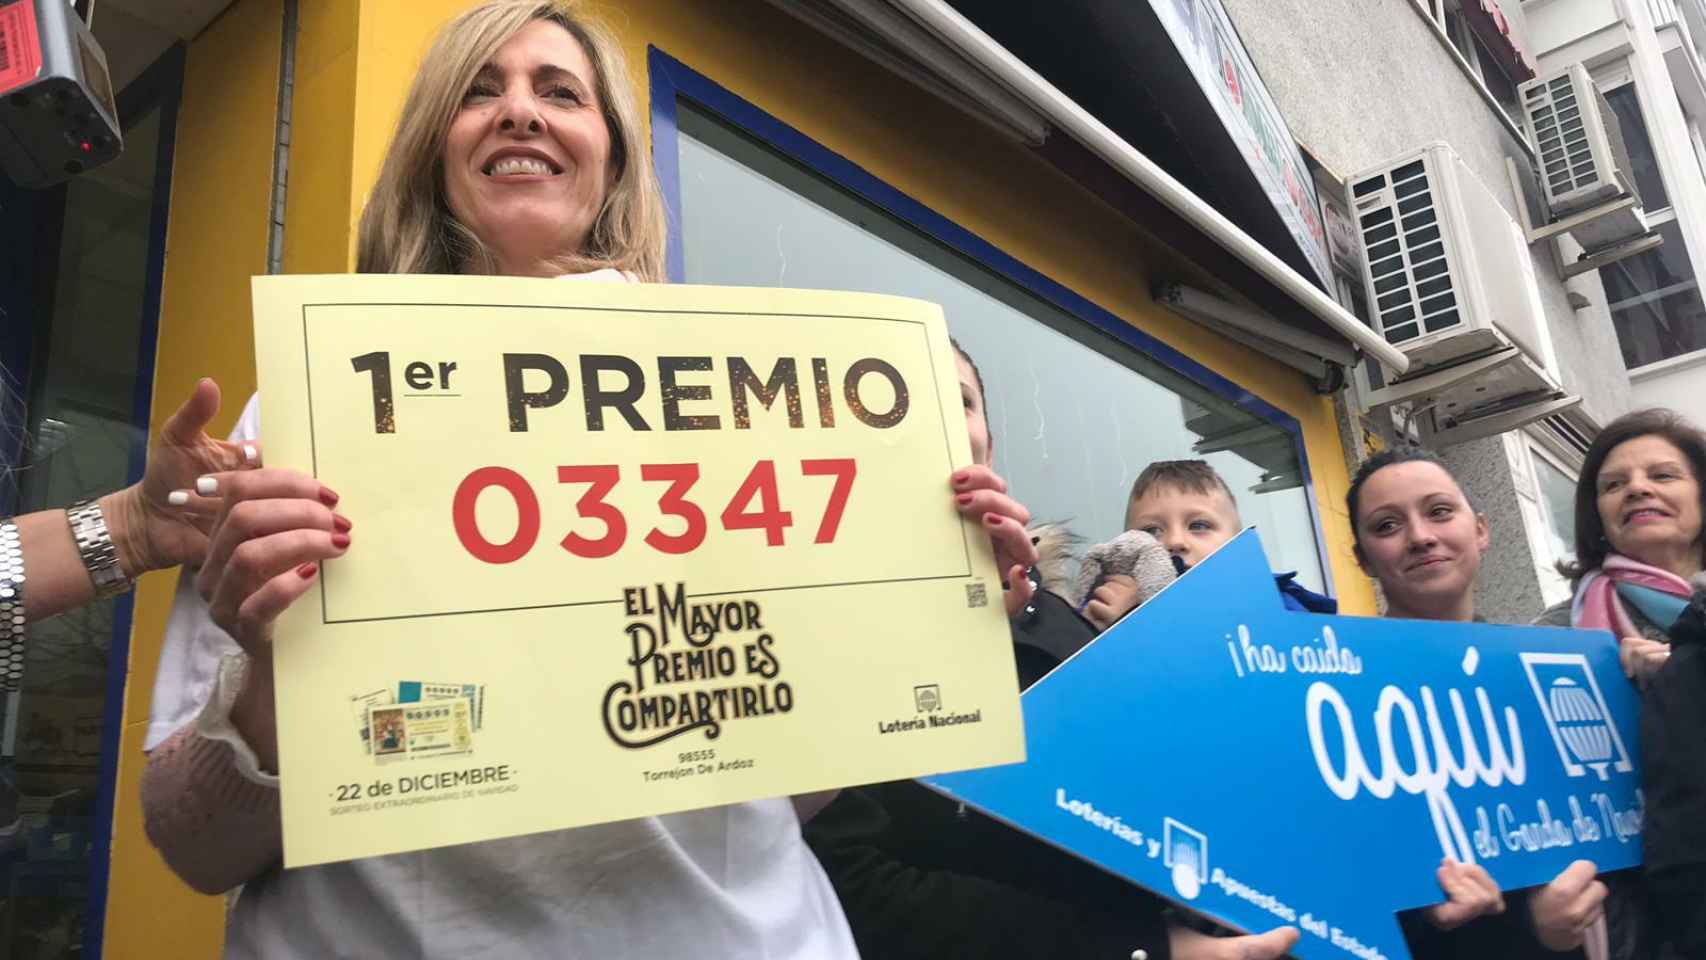 Ana Belén mostrando el número ganador frente a su administración de lotería